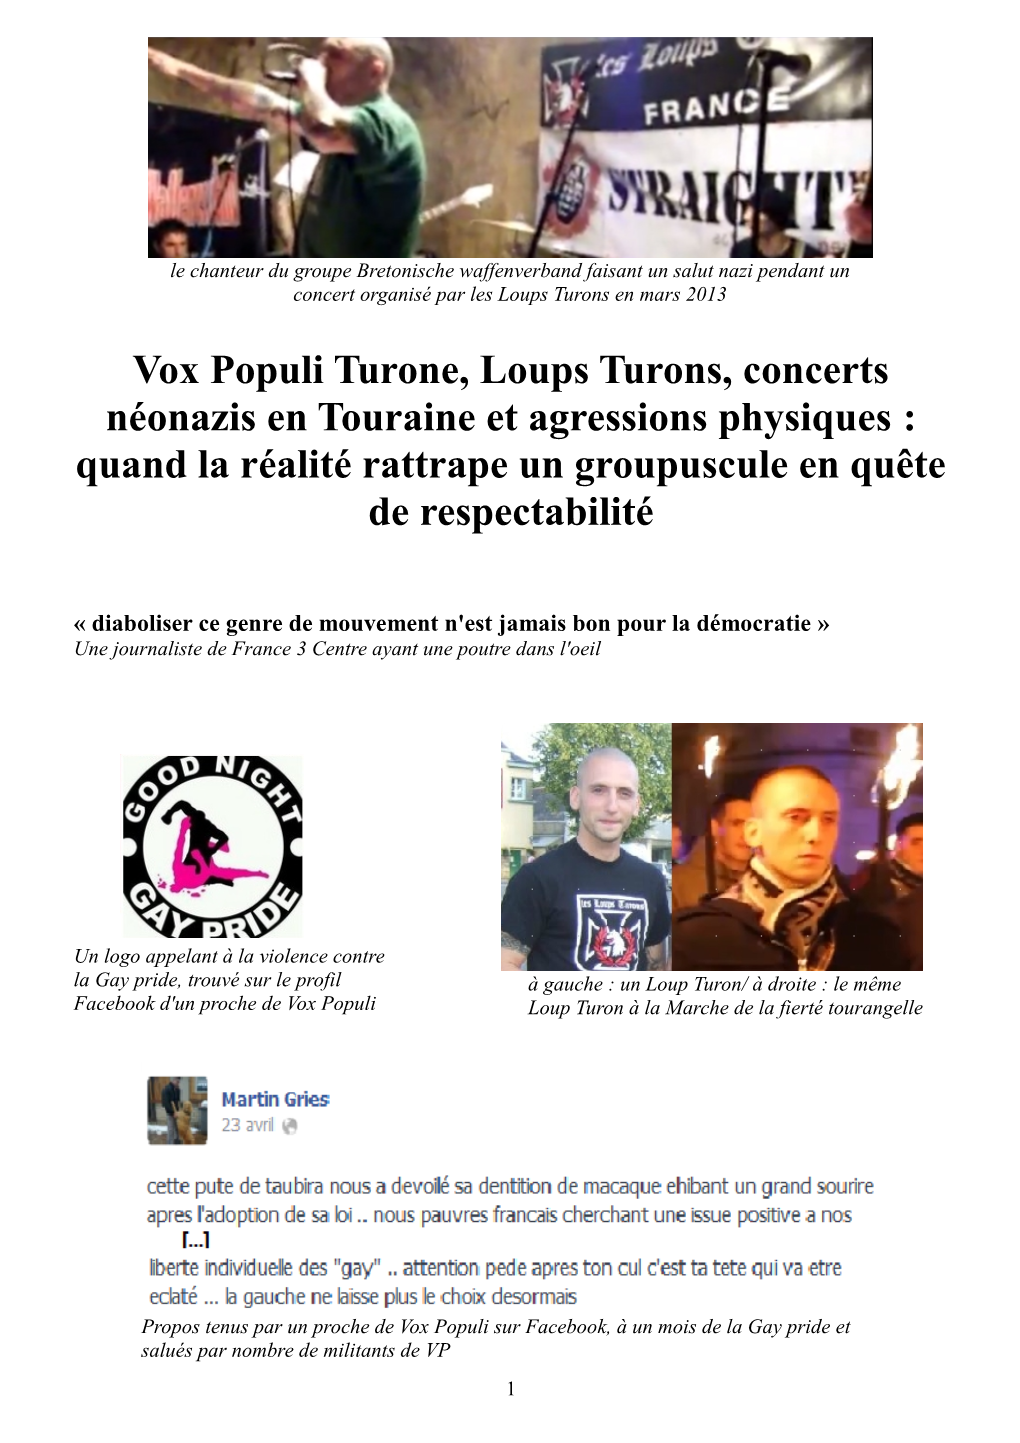 Vox Populi Et Loups Turons, Des Liens Informels Mais Réels 1) Marche De La Fierté Tourangelle : Loup Y Es-Tu ?